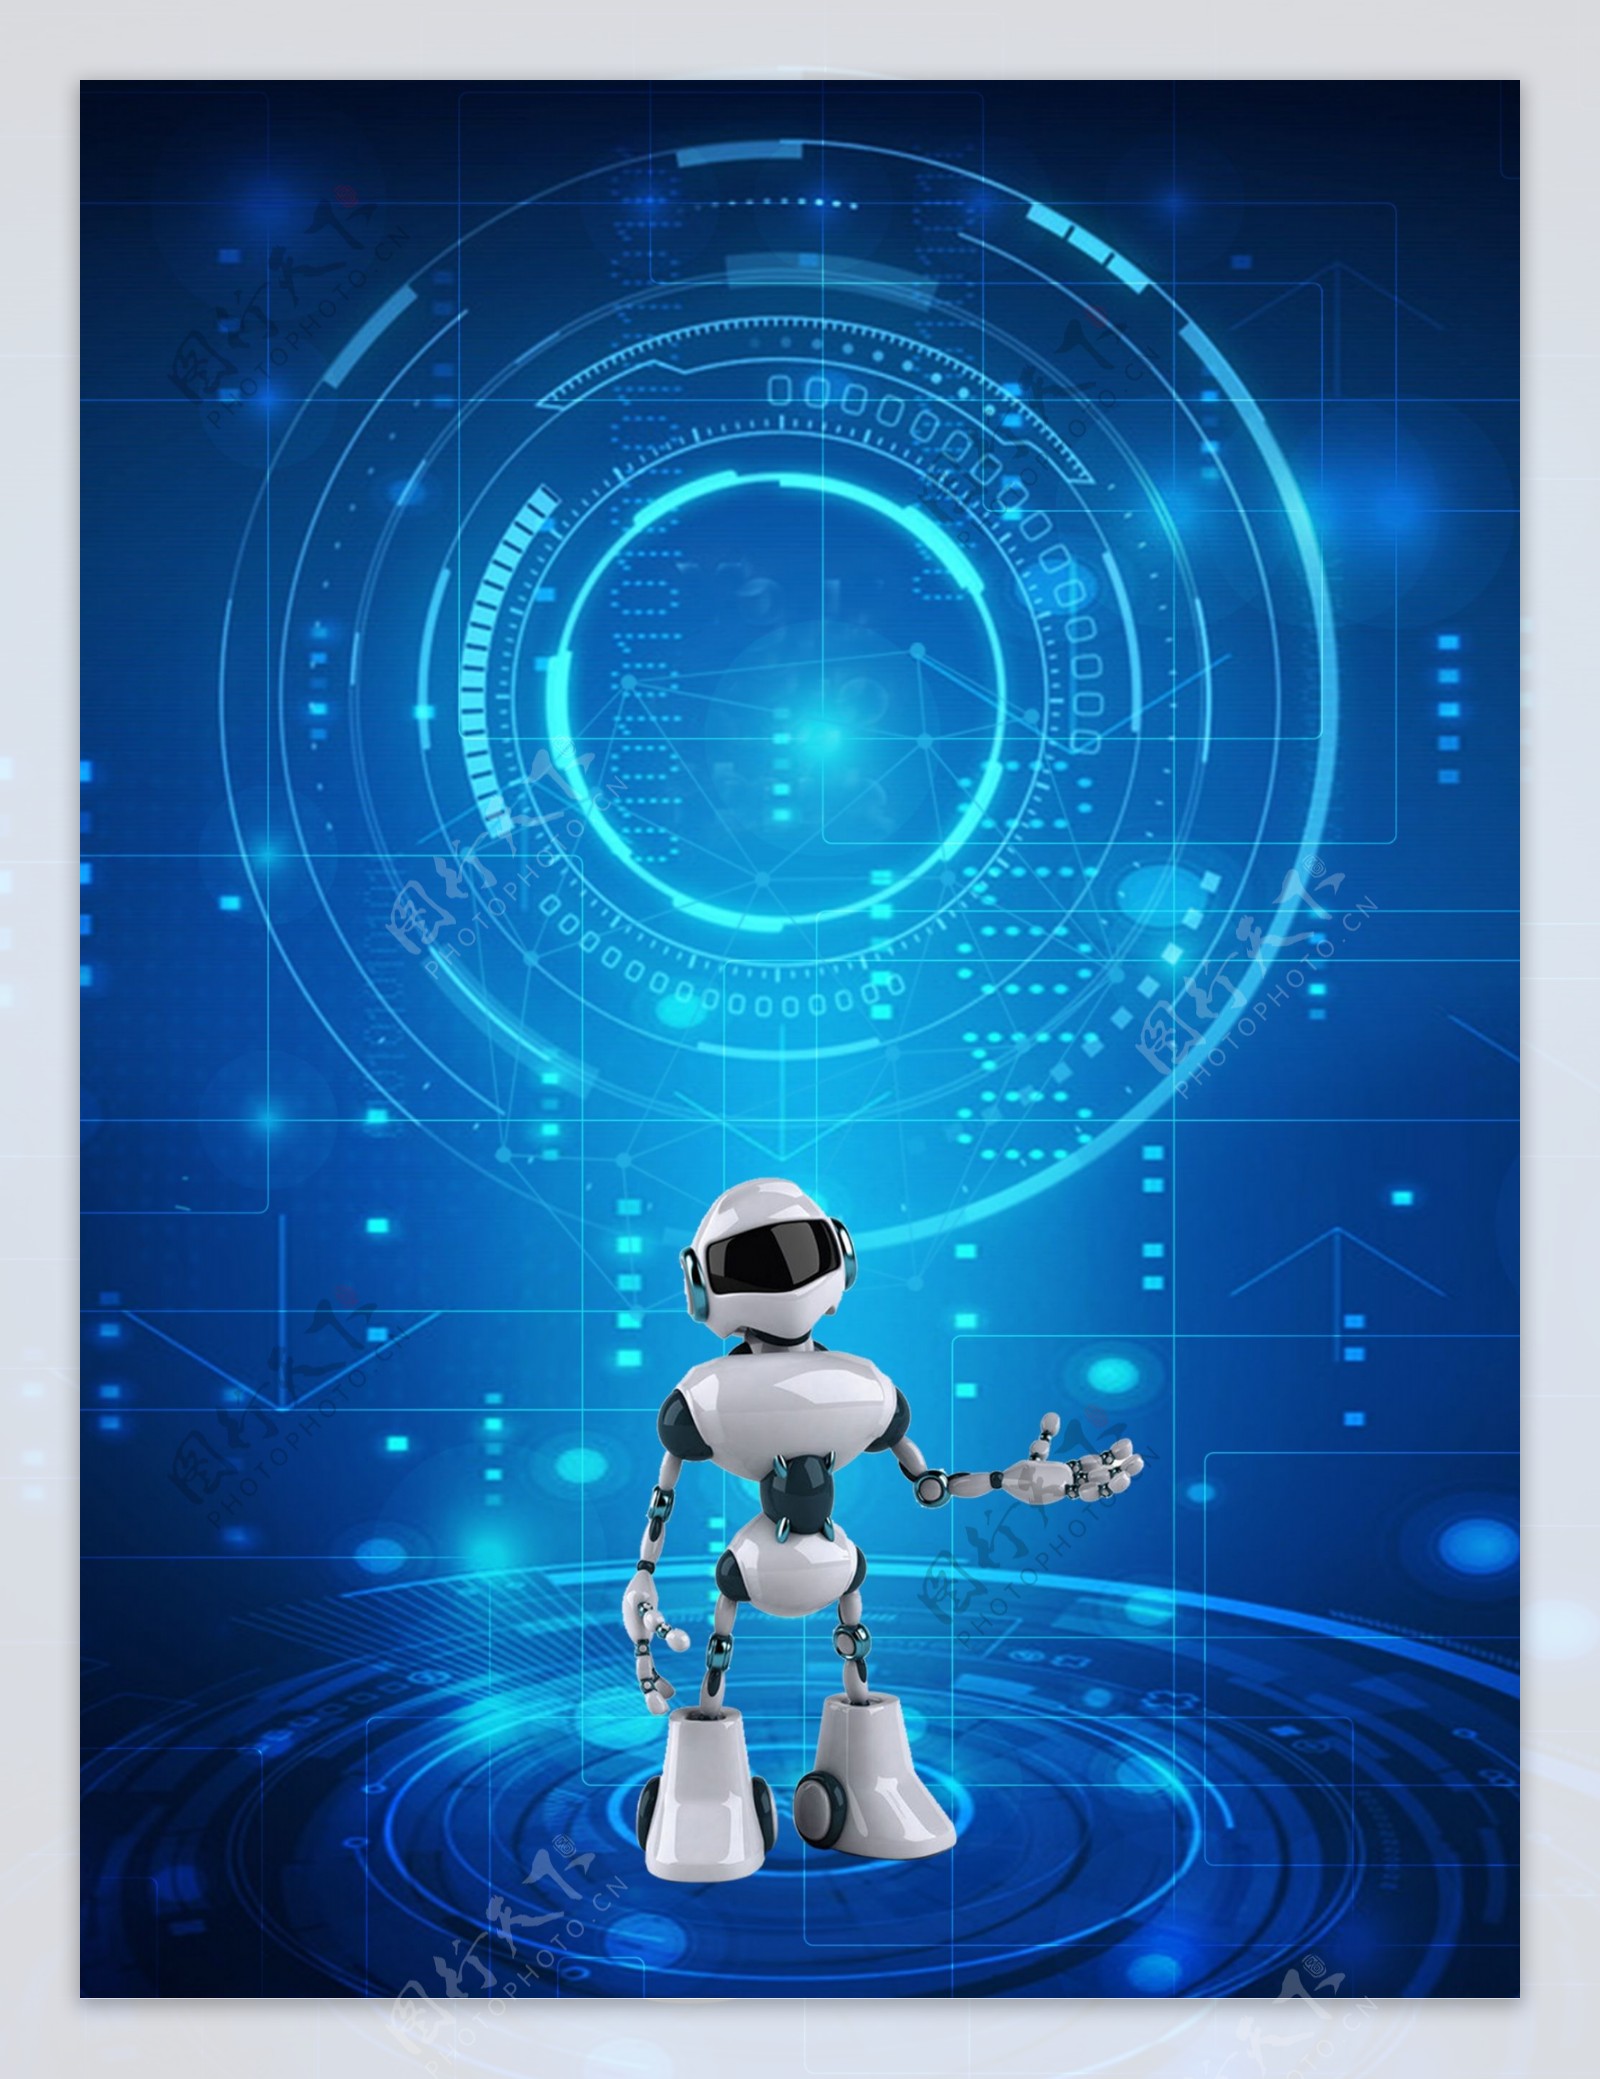 蓝色机器人时代智能科技背景